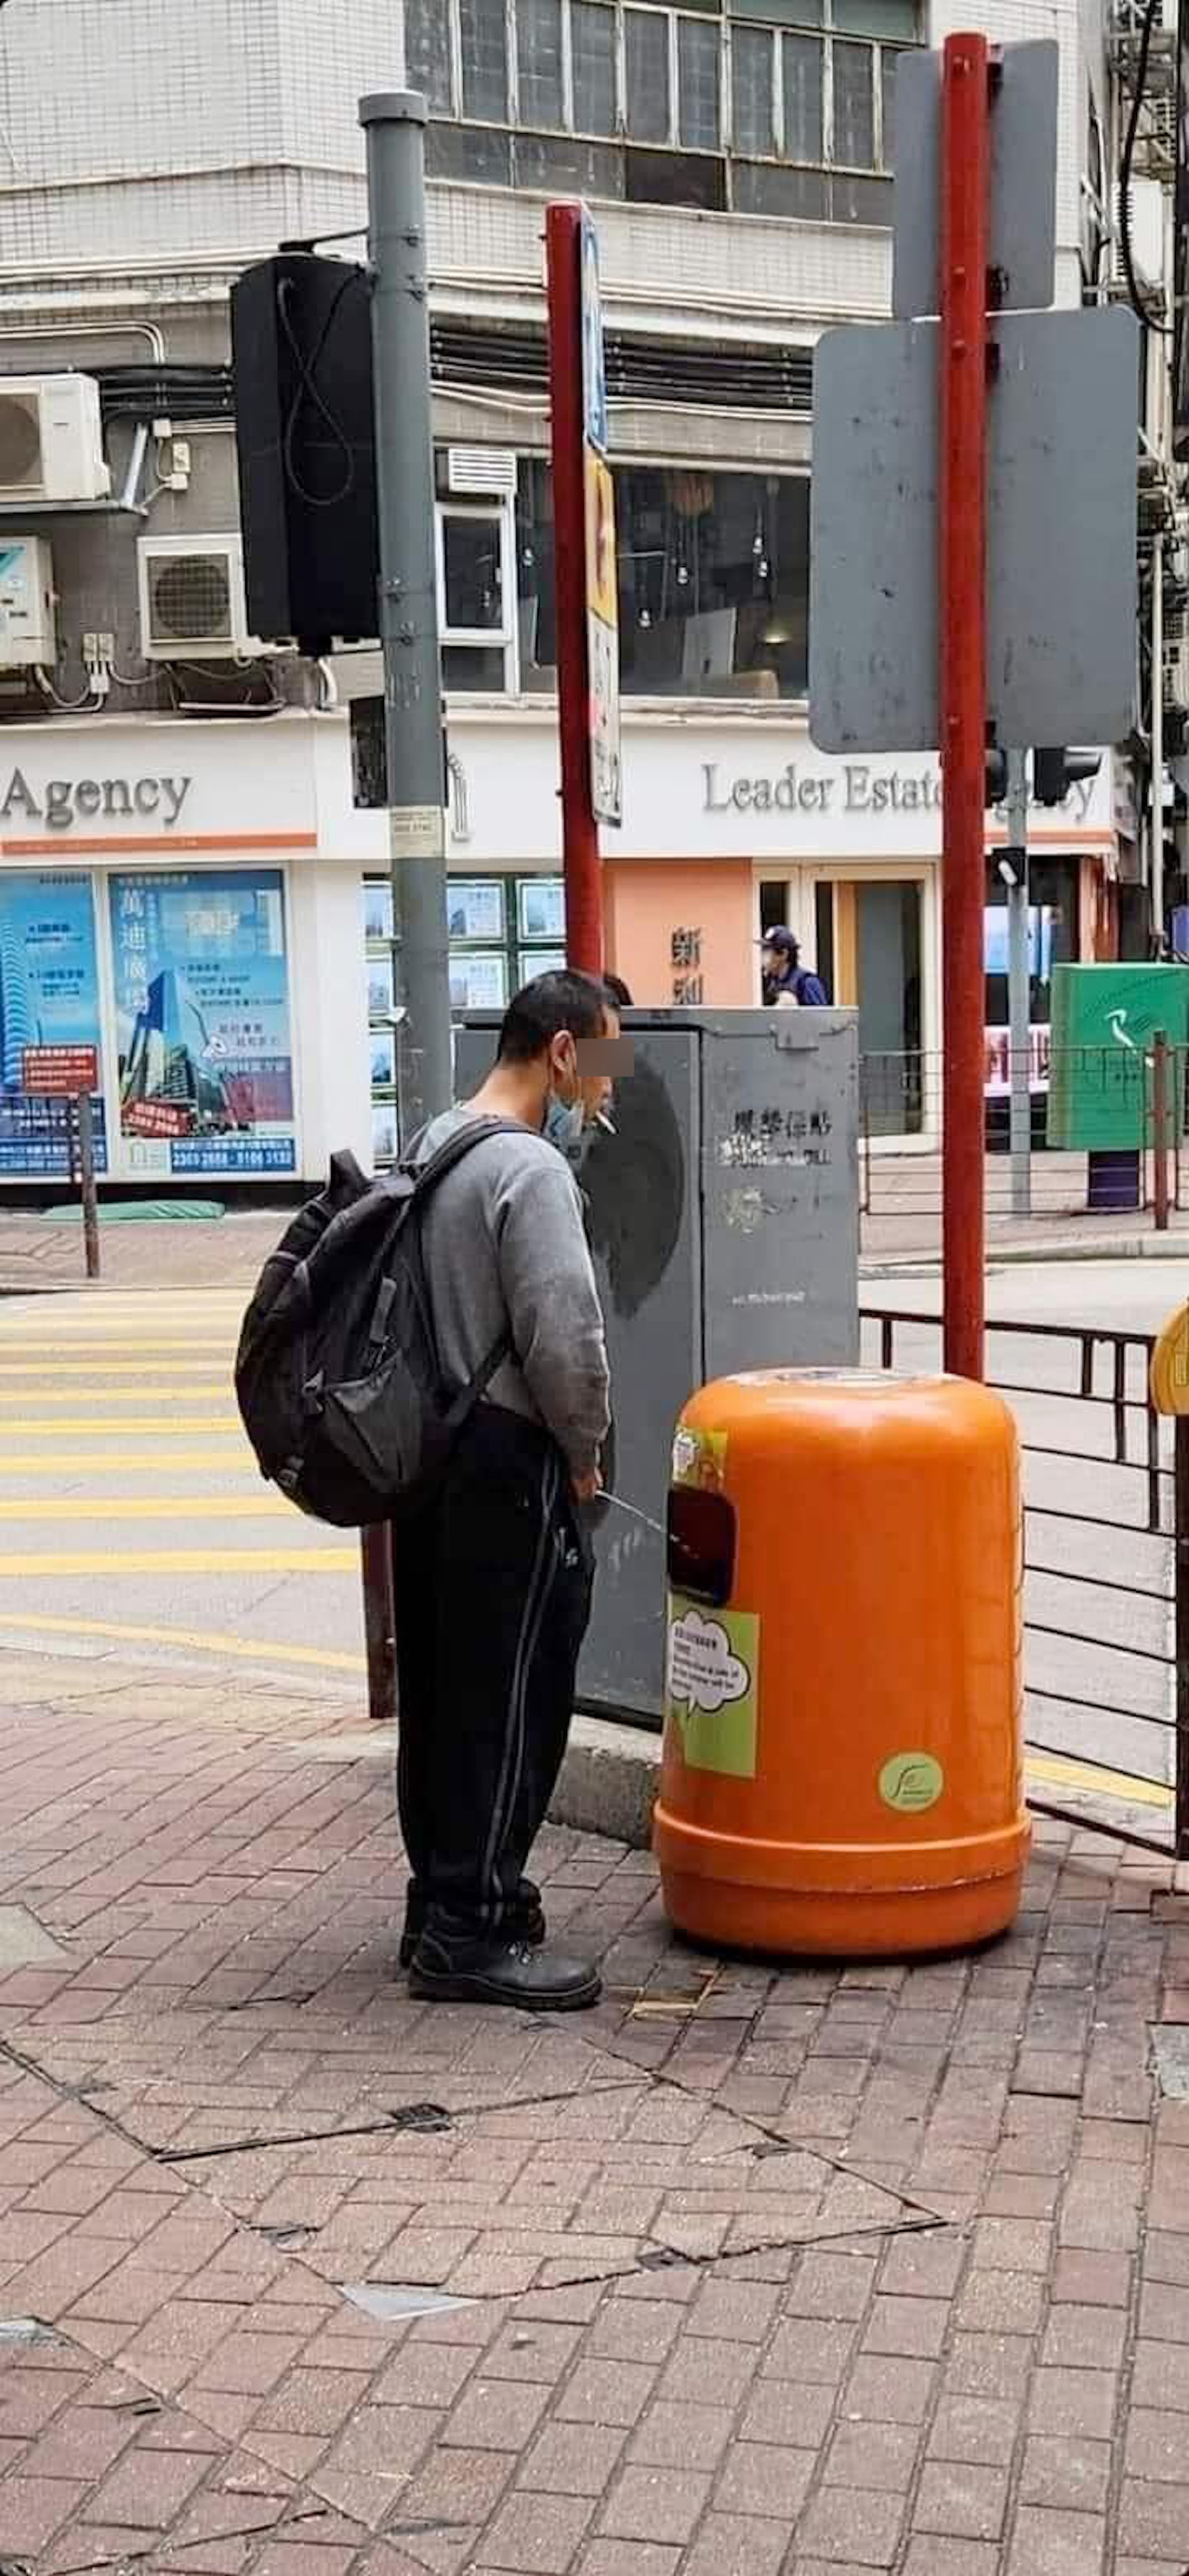 網上瘋傳相片，顯示1名男子竟將街頭的垃圾堆當成尿兜，當眾對着垃圾桶小便，嘴上還拉下口罩叼着煙頭。（facebook圖片）